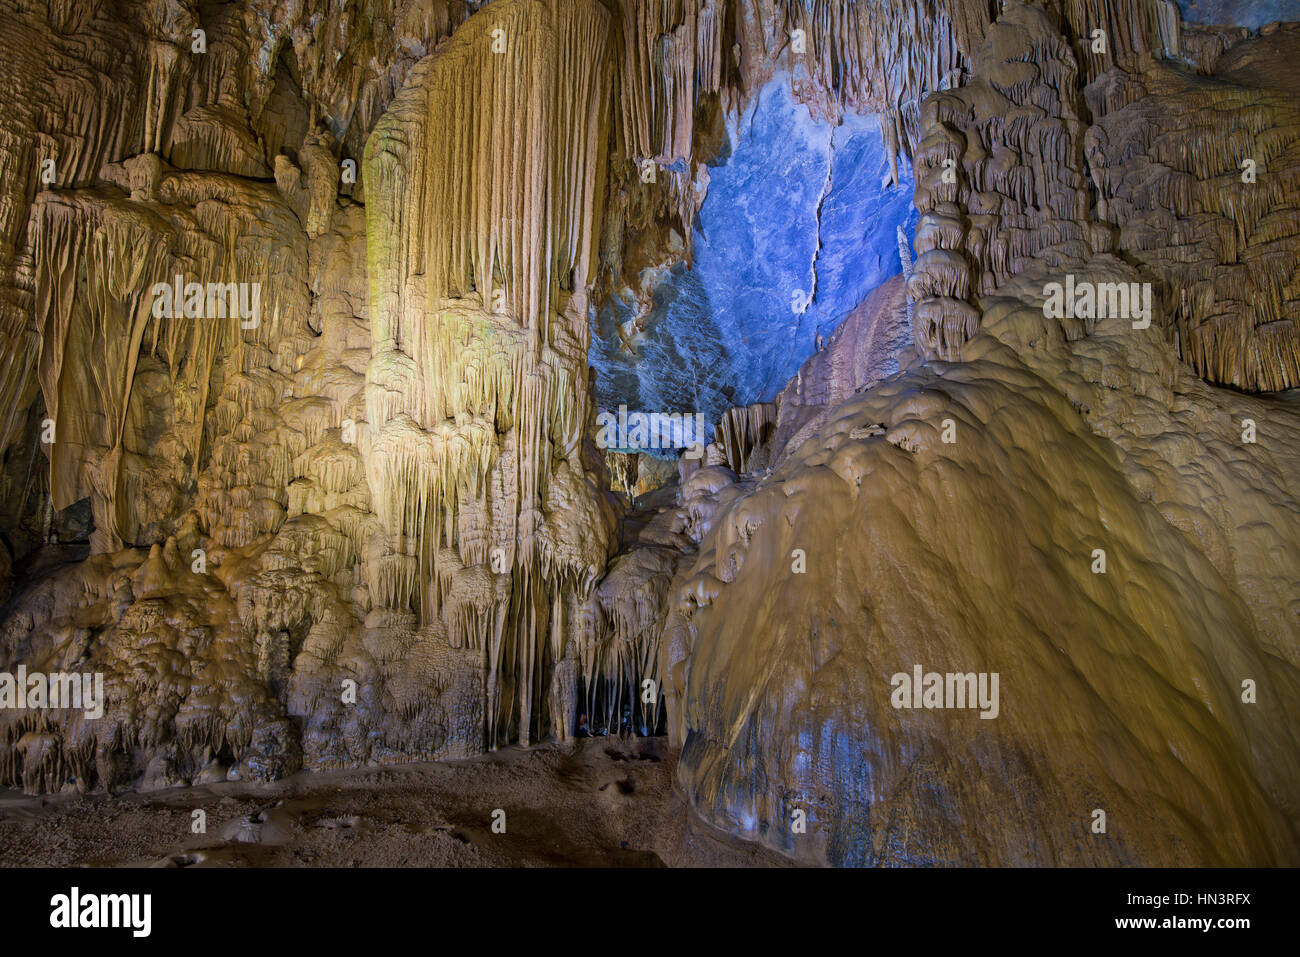 Stalactites and stalagmites, illuminated dripstone cave, Thiên Đường Cave, National Park Phong Nha-Ke Bang, Phong Nha Stock Photo